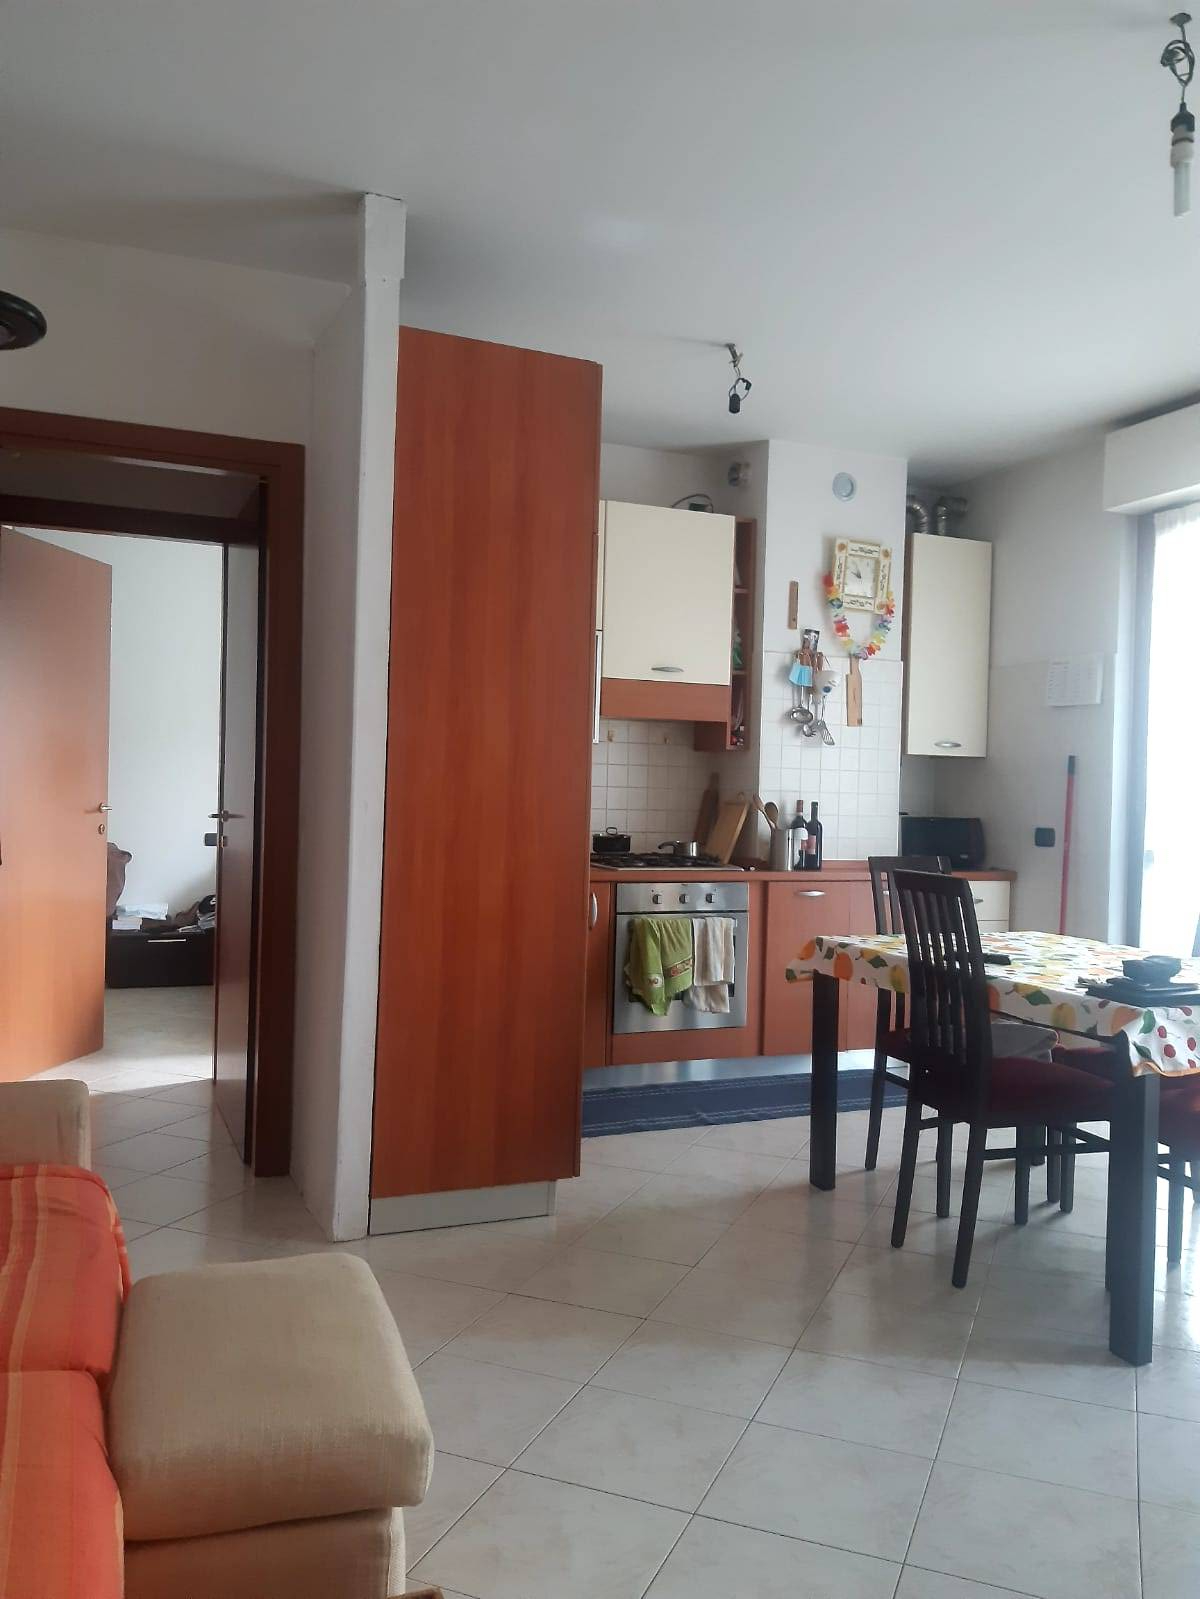 Appartamento in vendita a Turate, 2 locali, prezzo € 122.000 | CambioCasa.it